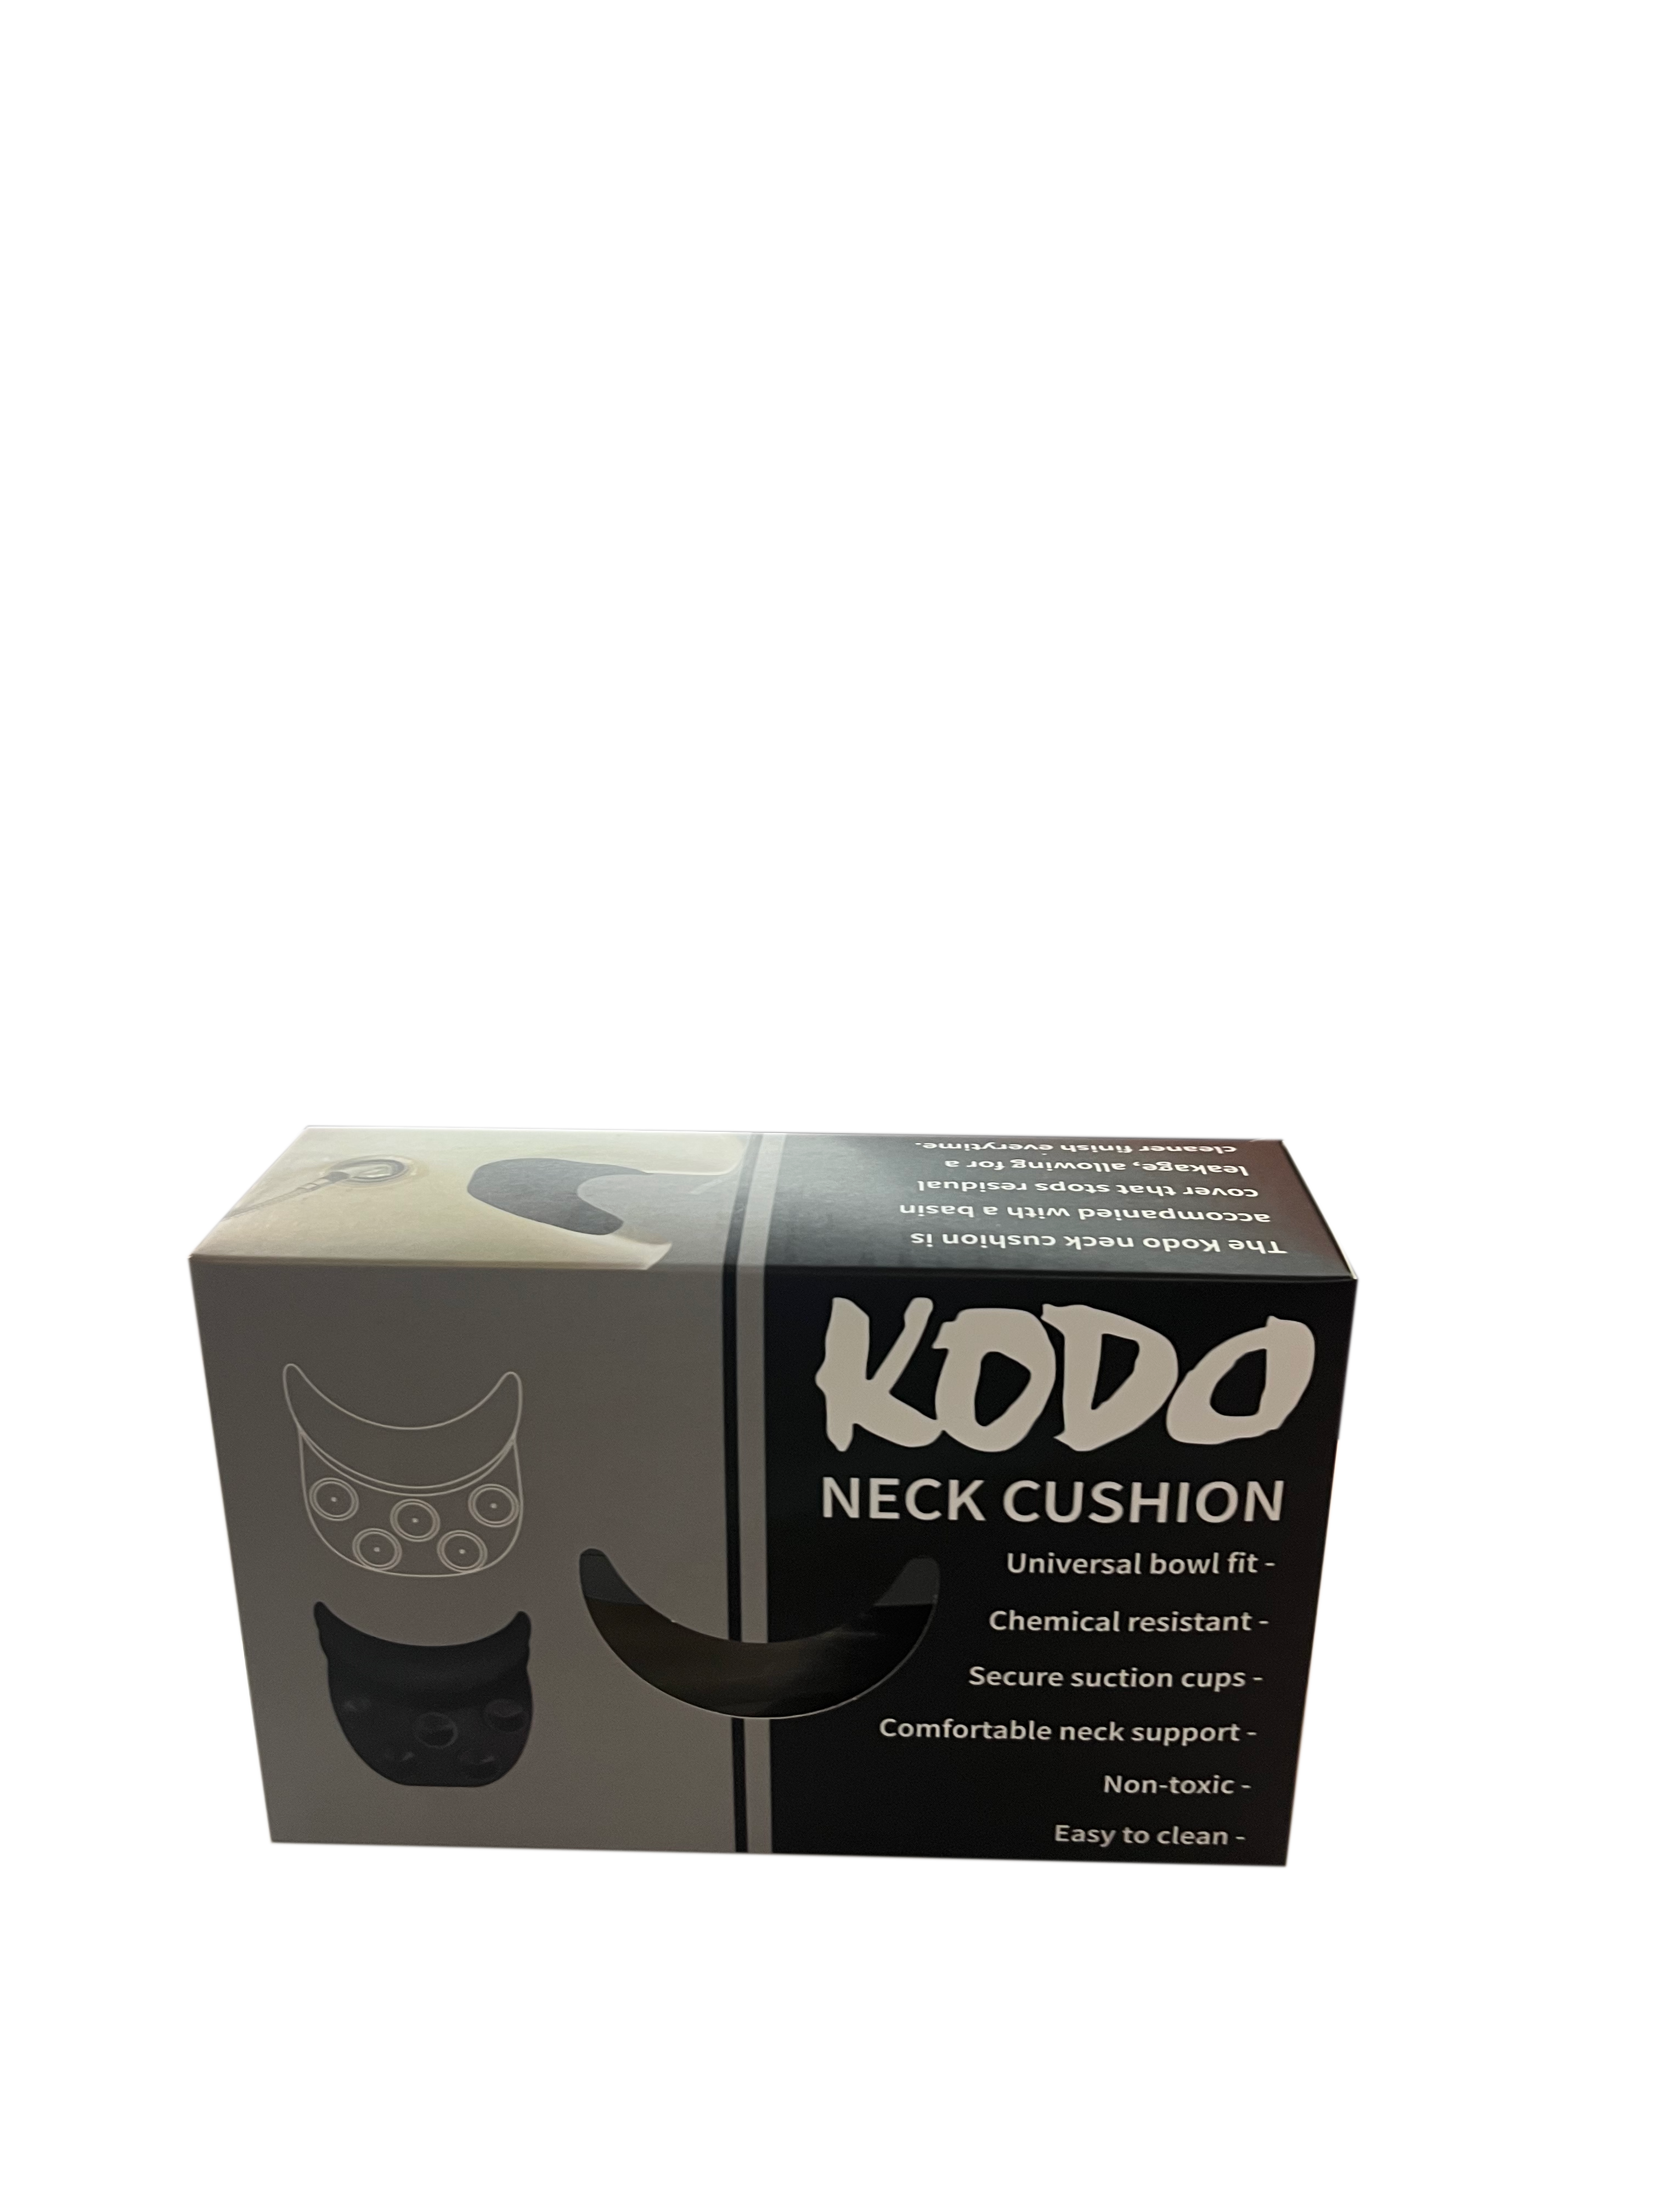 Kodo Neck Cushion